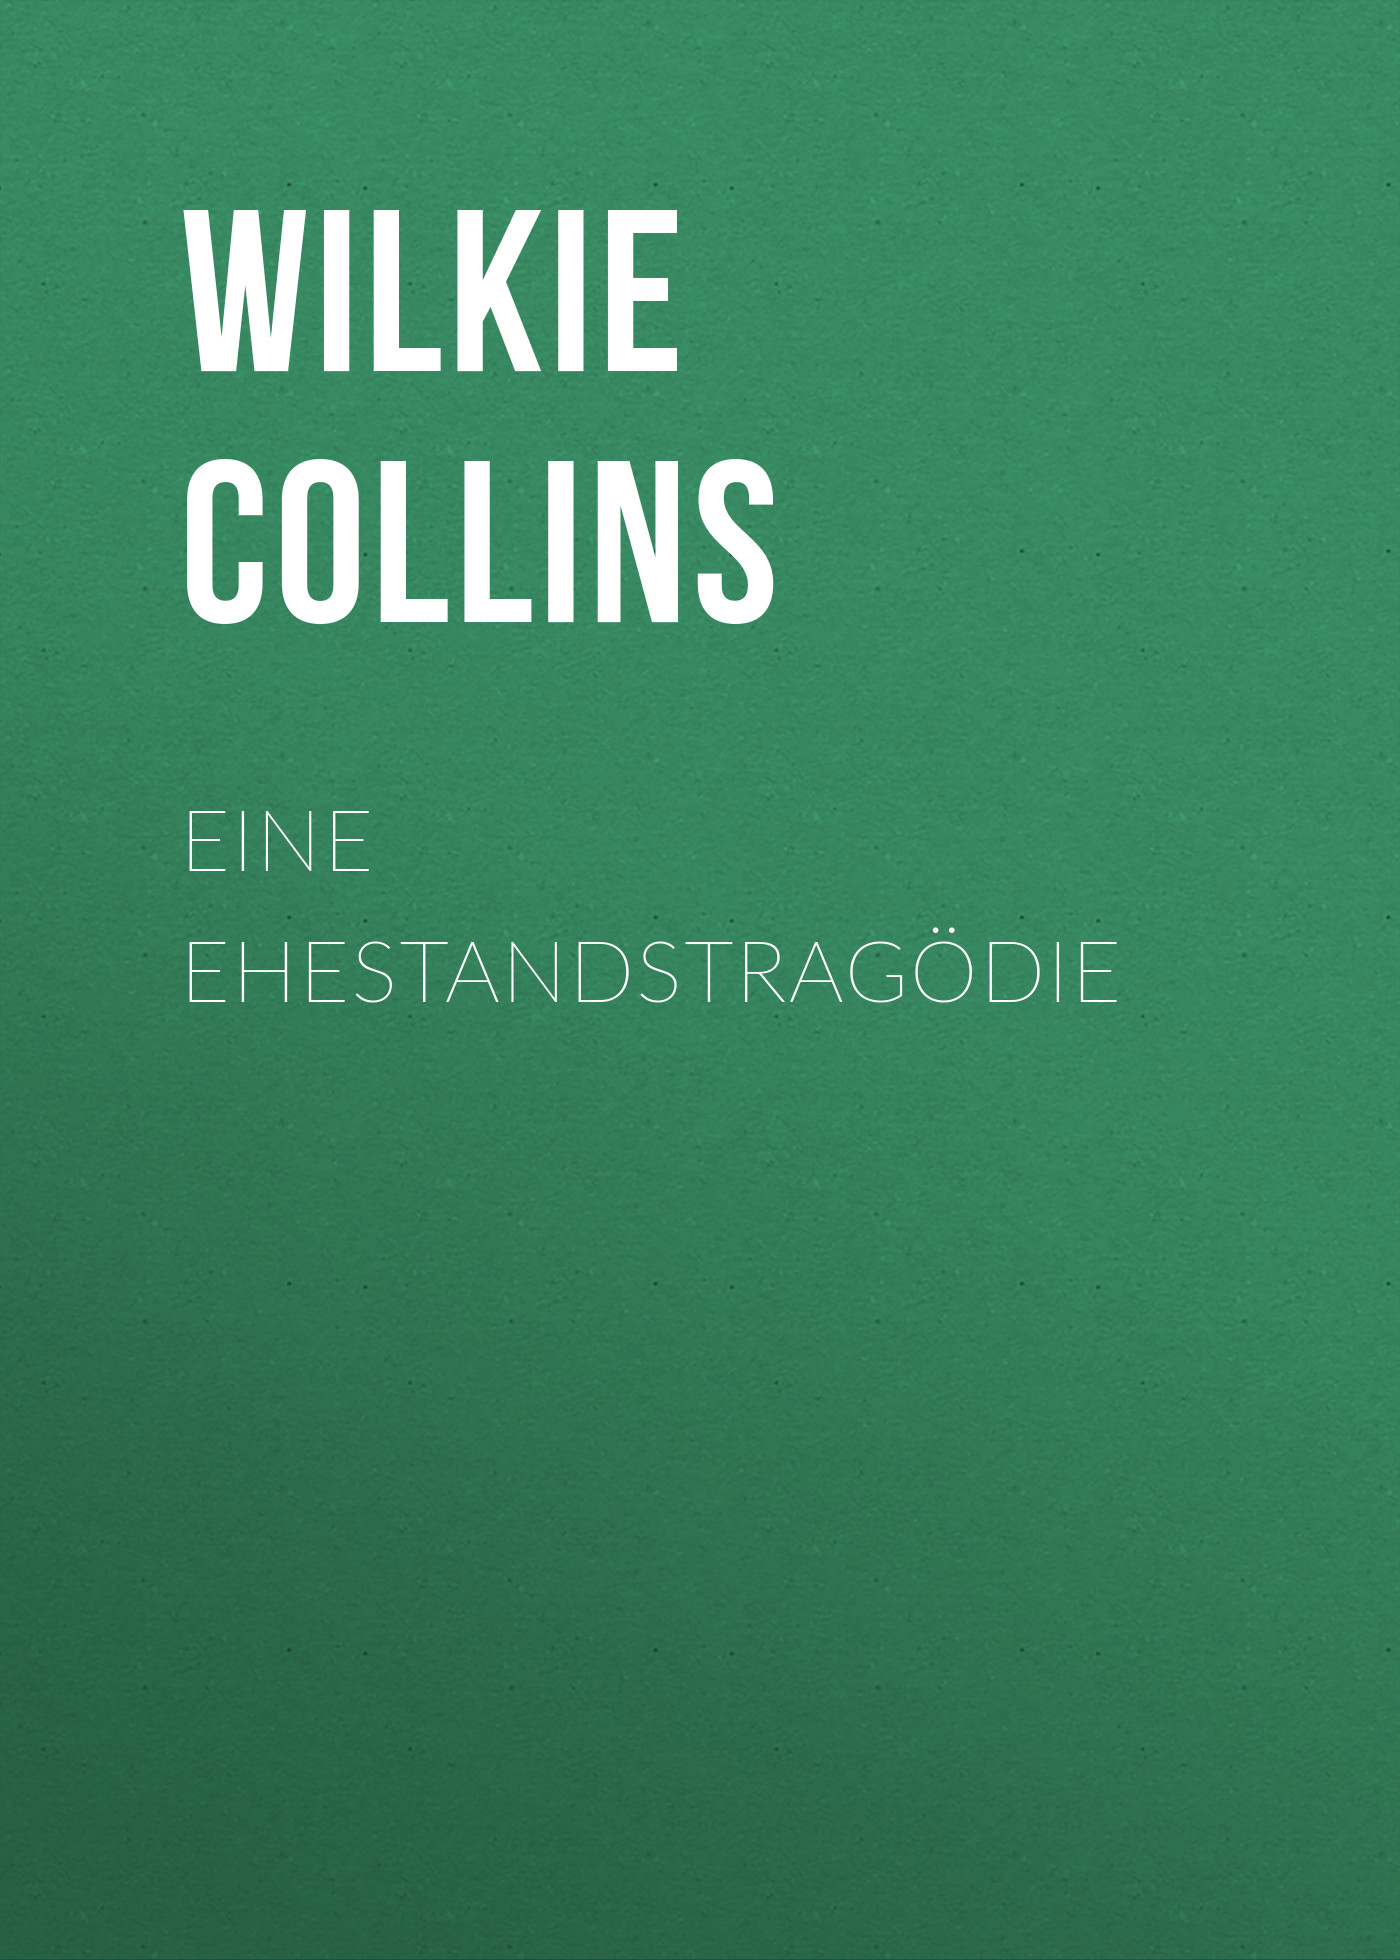 Книга Eine Ehestandstragödie из серии , созданная William Wilkie Collins, может относится к жанру Зарубежная классика. Стоимость электронной книги Eine Ehestandstragödie с идентификатором 48634412 составляет 0 руб.